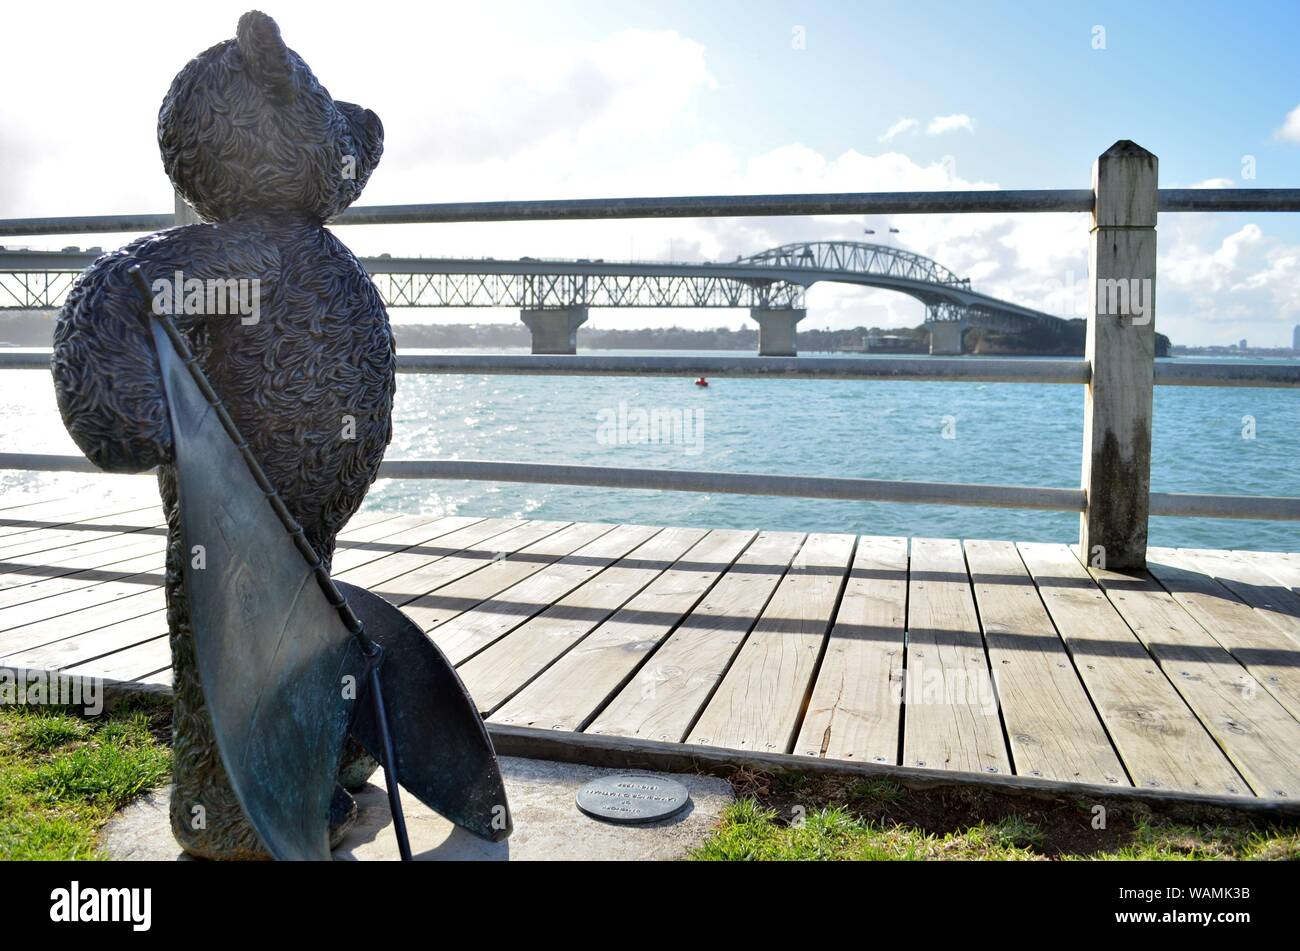 Teddybär Statue zur Erinnerung an Lawrence D Nathan (1910-1987) an der Westhaven Marina, mit Blick auf die Auckland Harbour Bridge Stockfoto